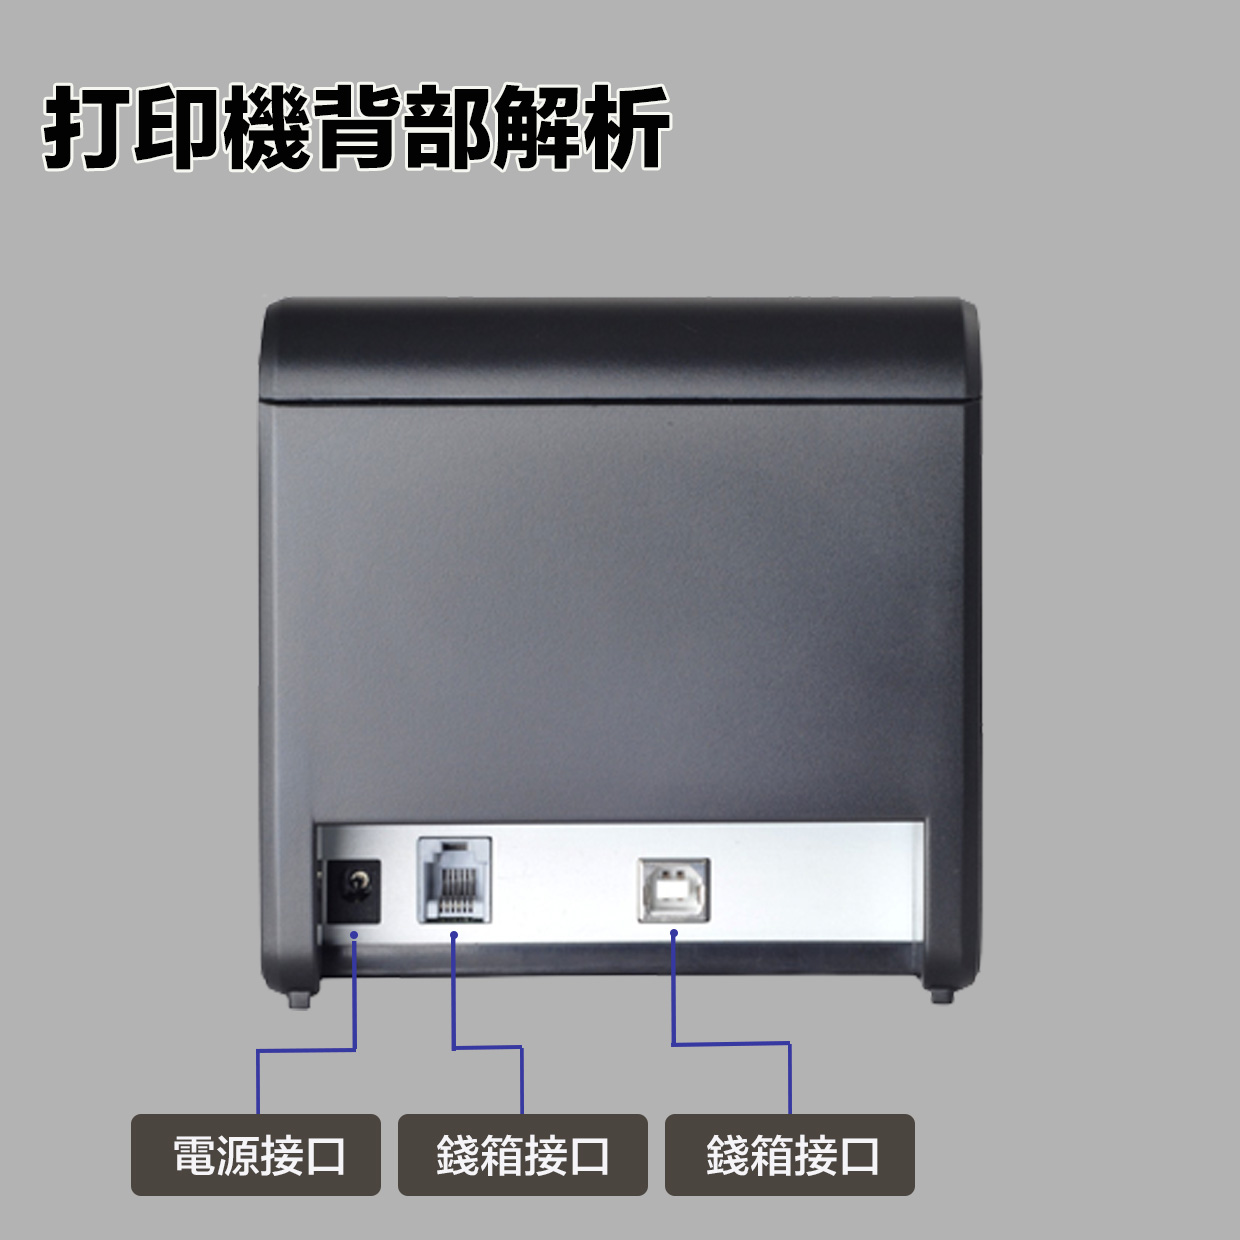 芯燁 Xp Q90ec 58mm 電子發票機 出單機 收據機 熱感應 自動裁刀 打印機 廚房出單機 叫號機 9